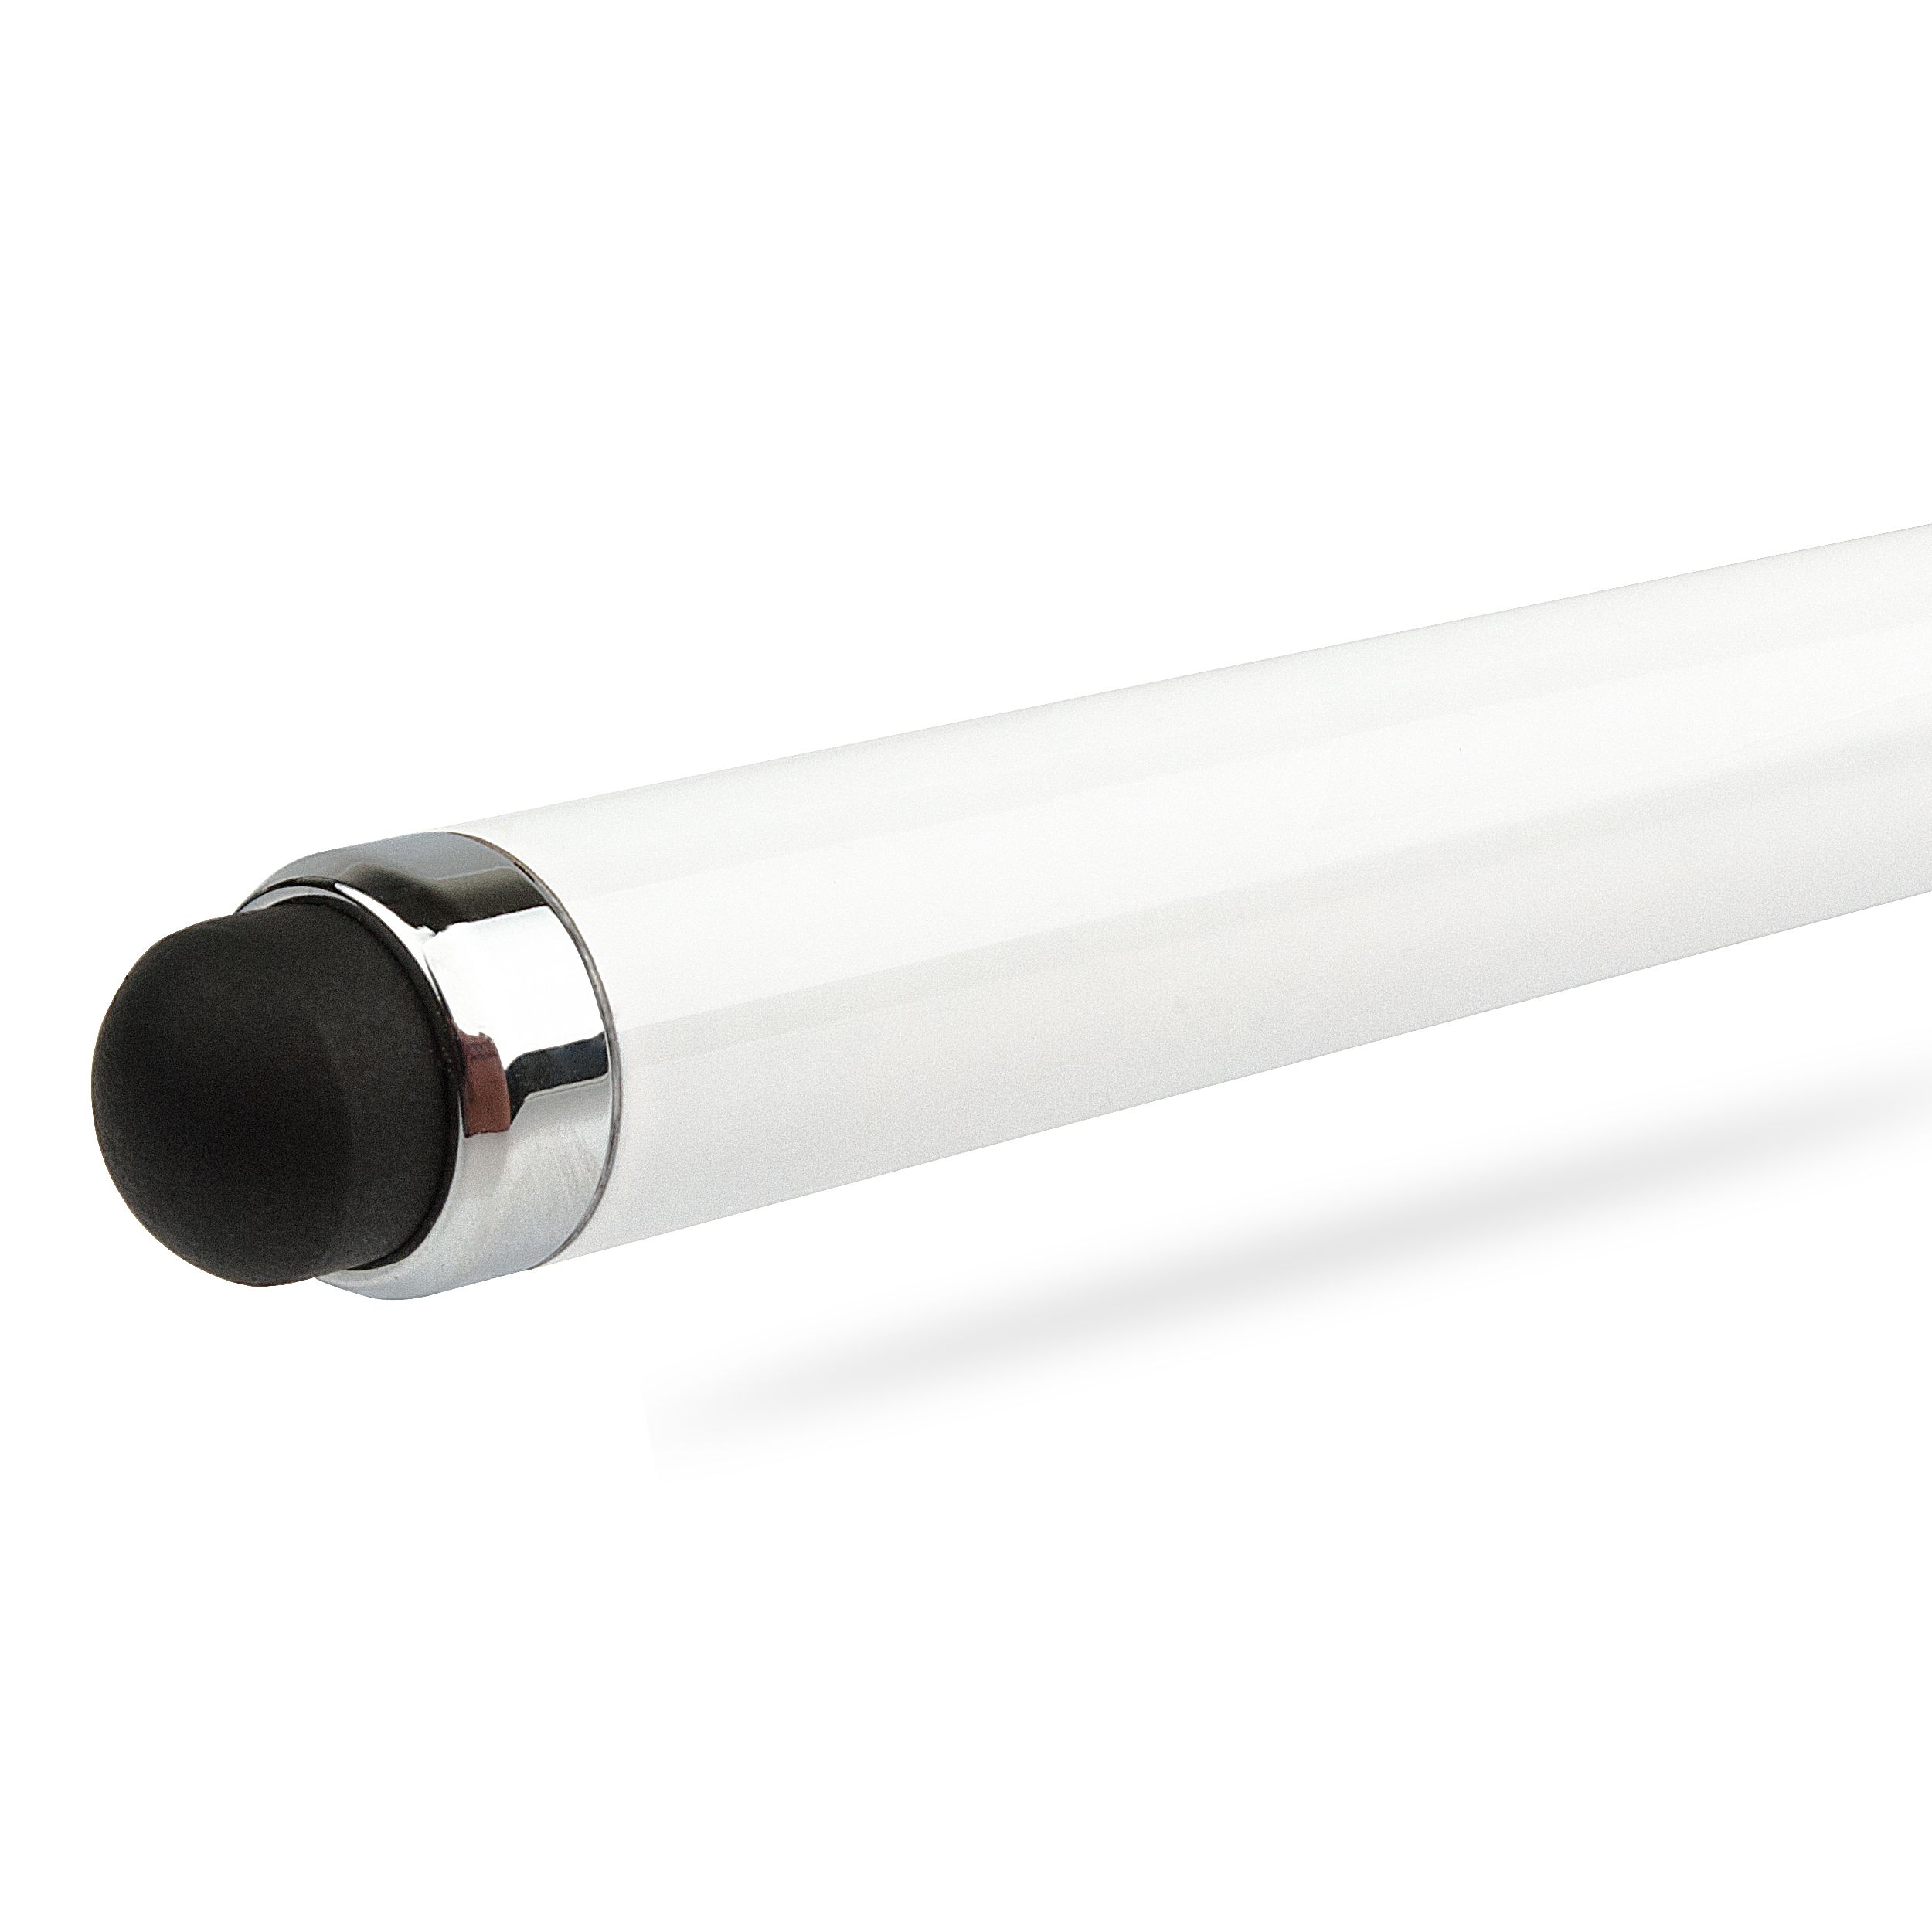 Προσαρμοσμένος δείκτης λέιζερ LED 4 σε 1 και στυλό μεταλλικής σφαίρας με γραφίδα